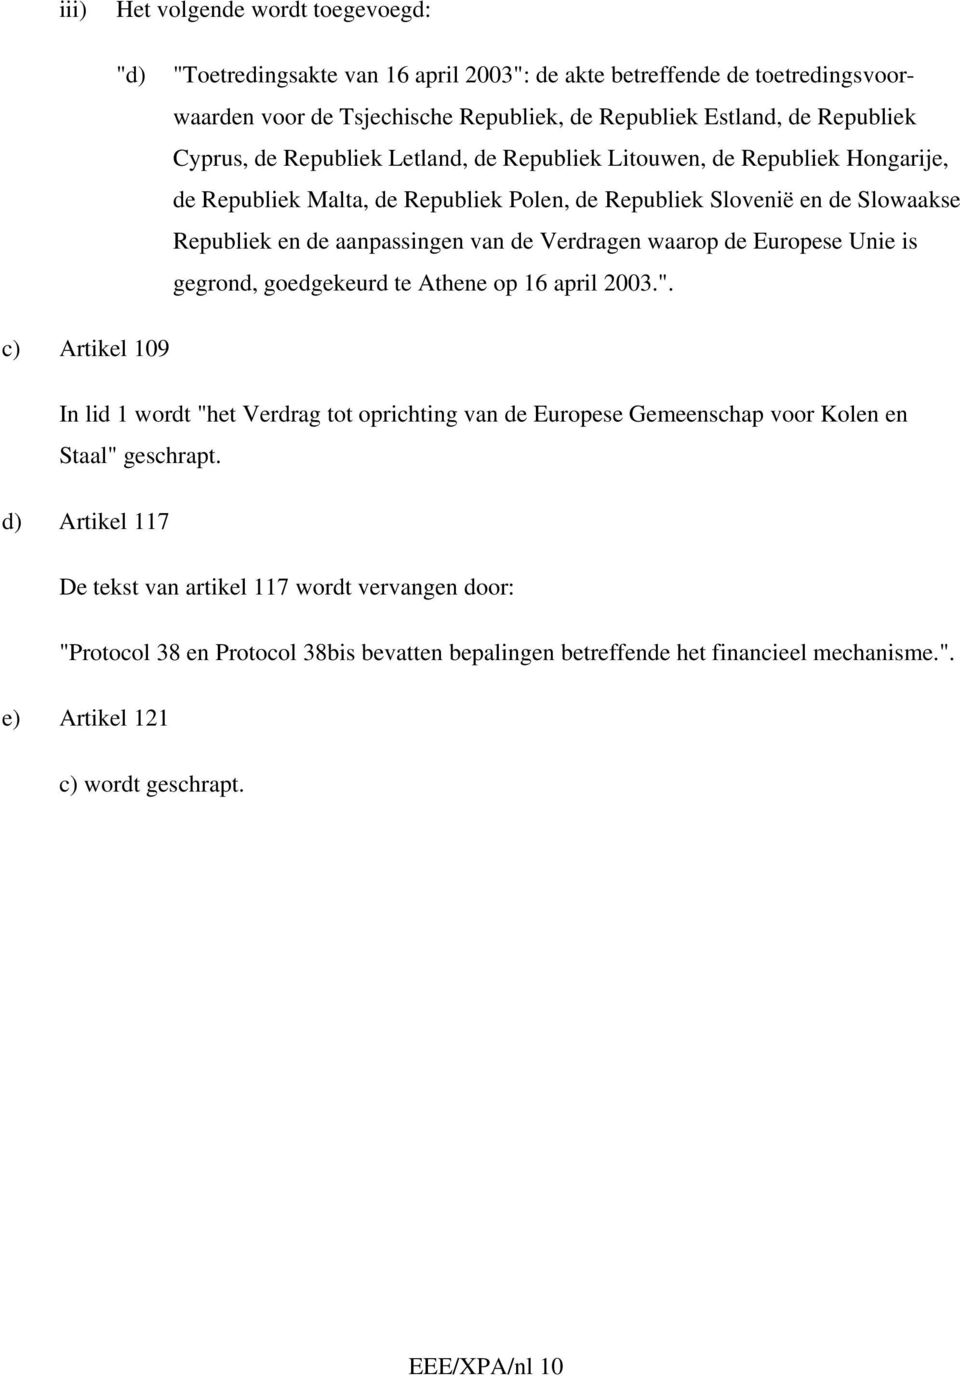 waarop de Europese Unie is gegrond, goedgekeurd te Athene op 16 april 2003.". c) Artikel 109 In lid 1 wordt "het Verdrag tot oprichting van de Europese Gemeenschap voor Kolen en Staal" geschrapt.